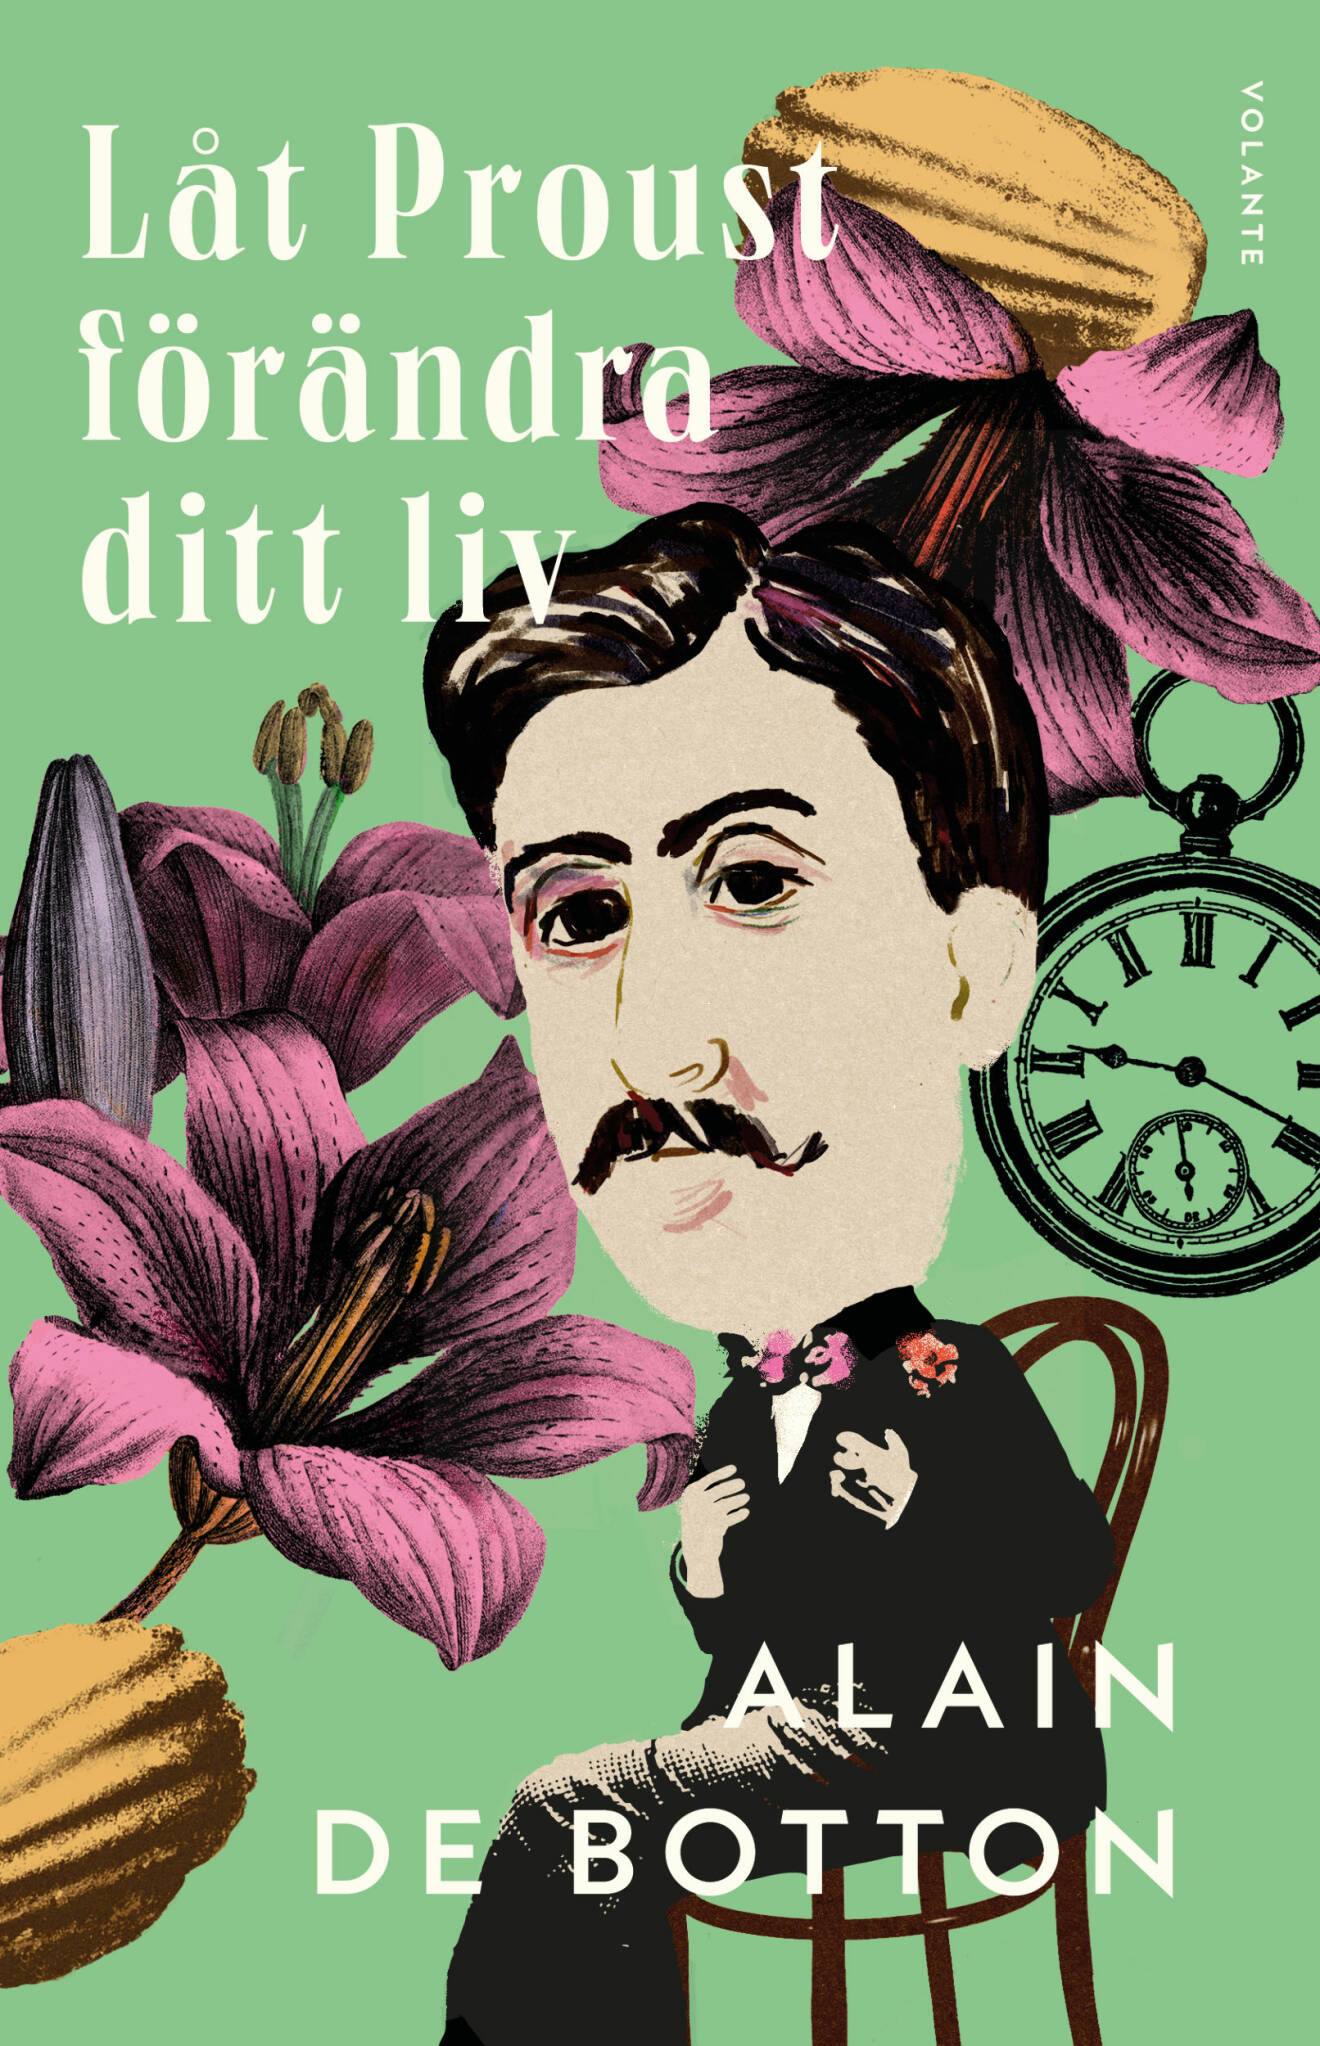 Låt Proust förändra ditt liv, Alain de Botton (Volante)